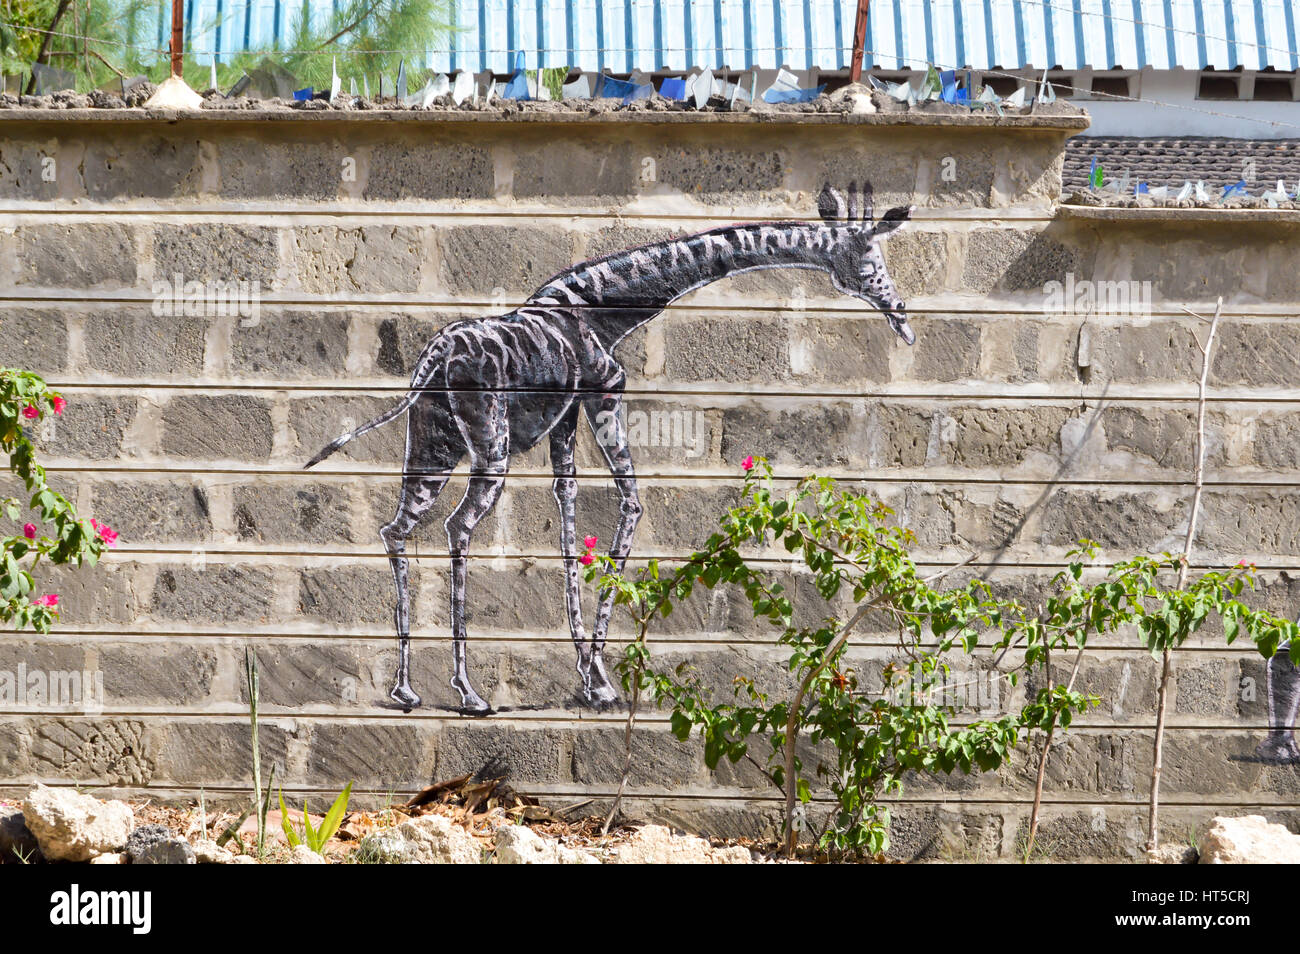 La giraffa disegnare su una parete di blocchi non elaborati nella città di Bamburi in Kenya Foto Stock